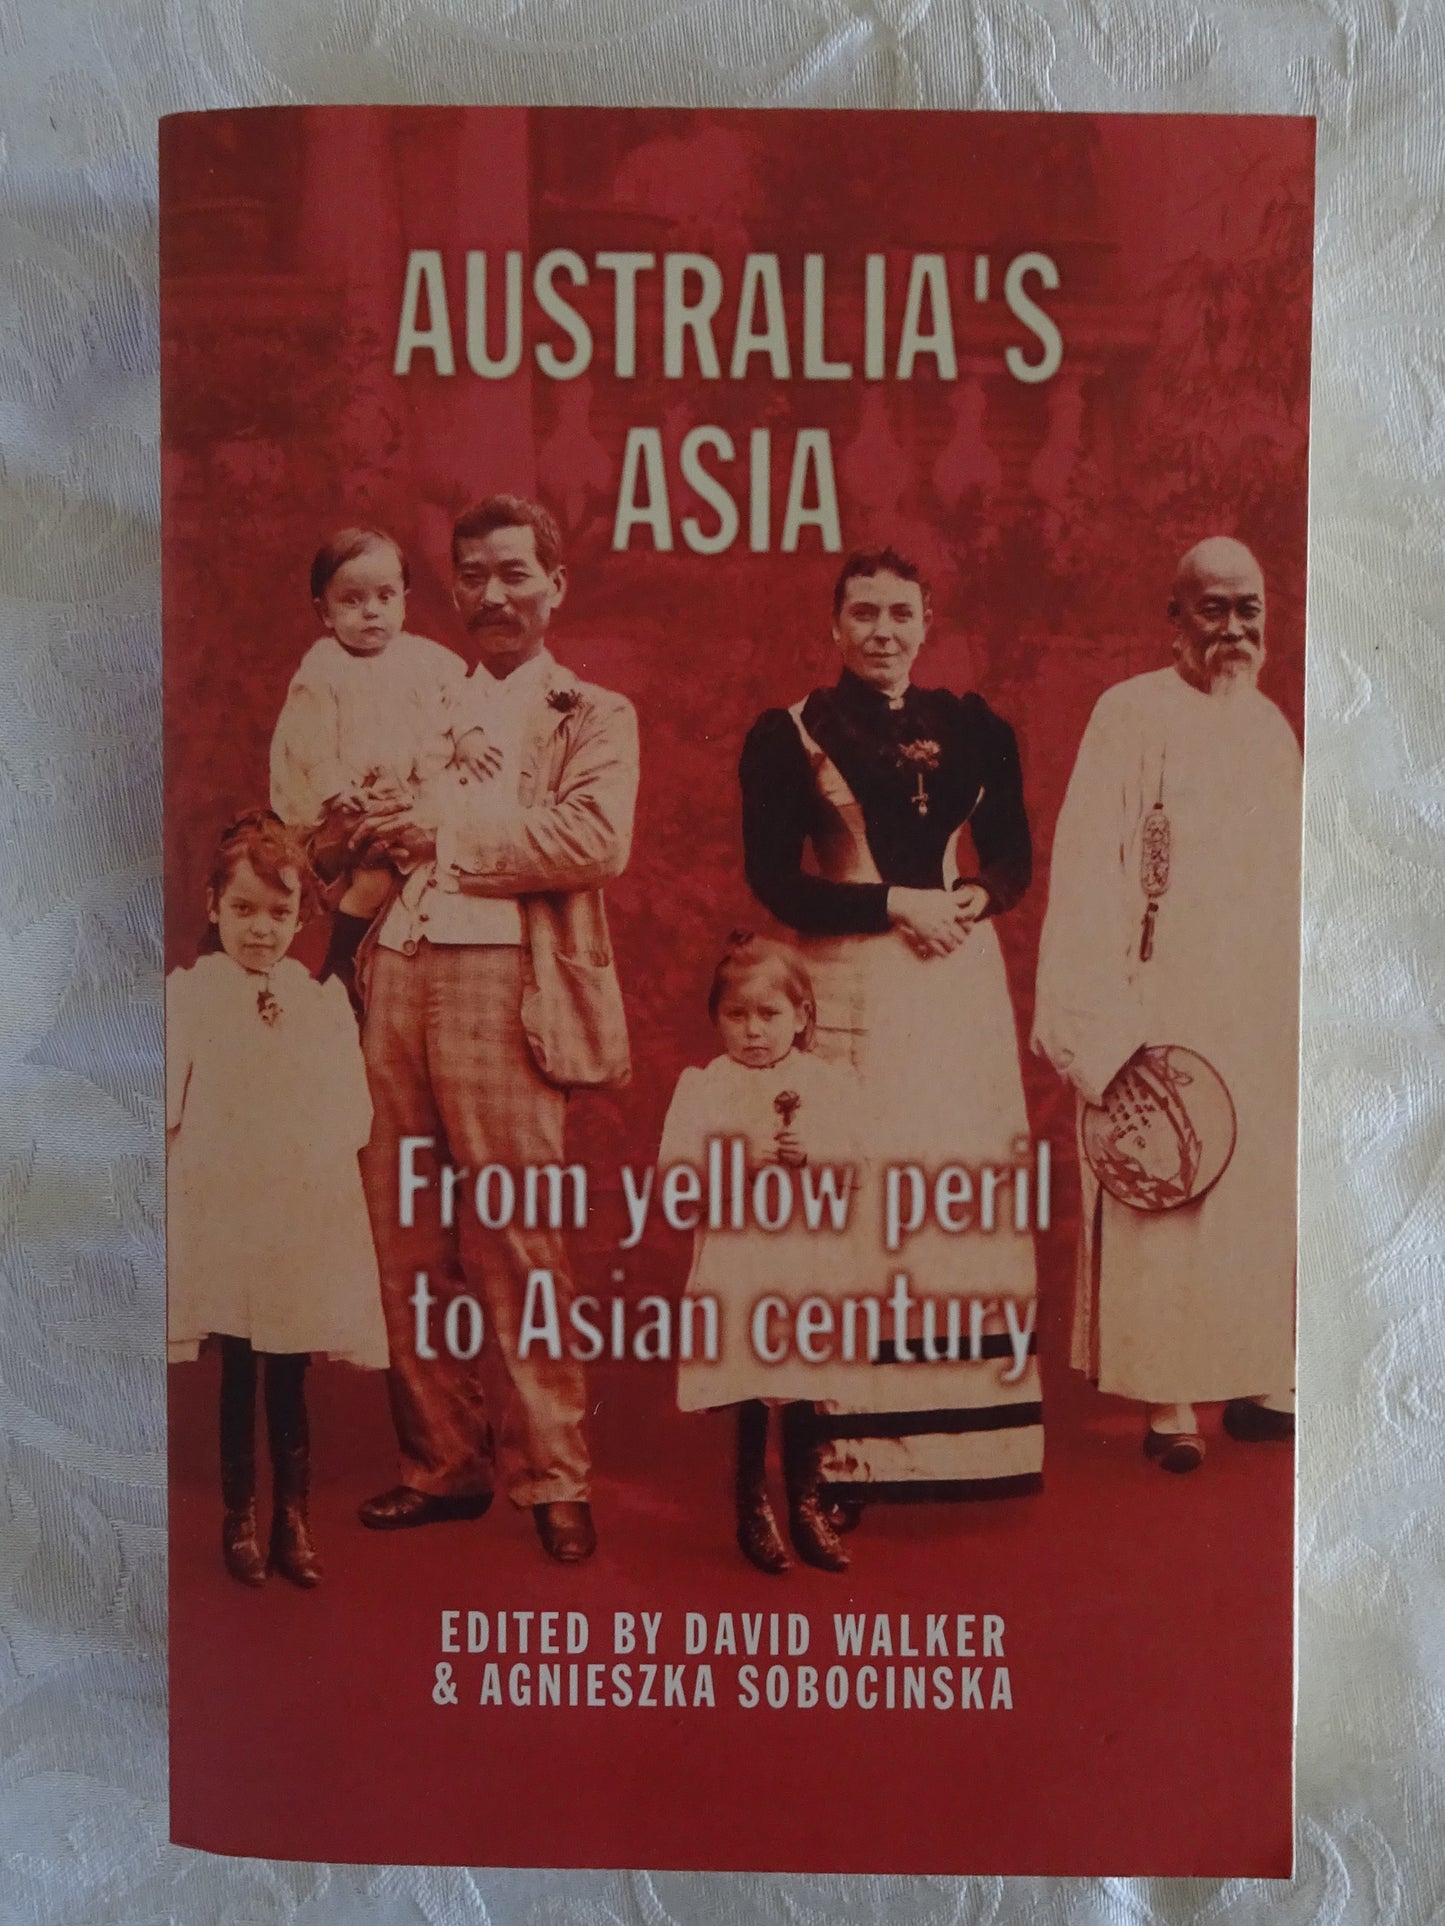 Australia's Asia by David Walker & Agnieszka Sobocinska